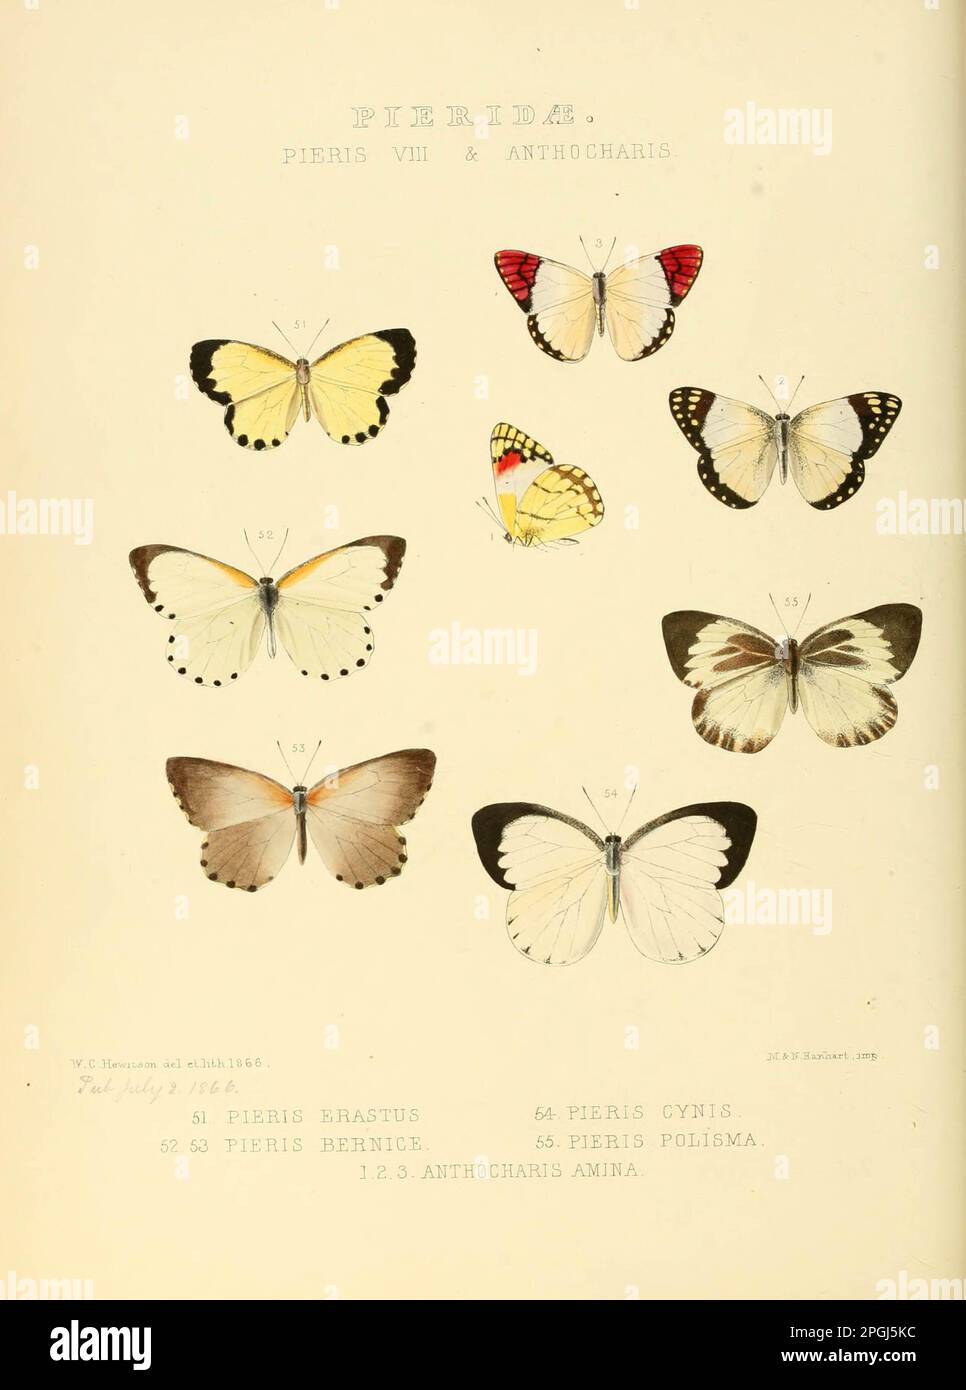 Illustrazioni di nuove specie di farfalle esotiche sarcococca VIII & Anthocharis Foto Stock